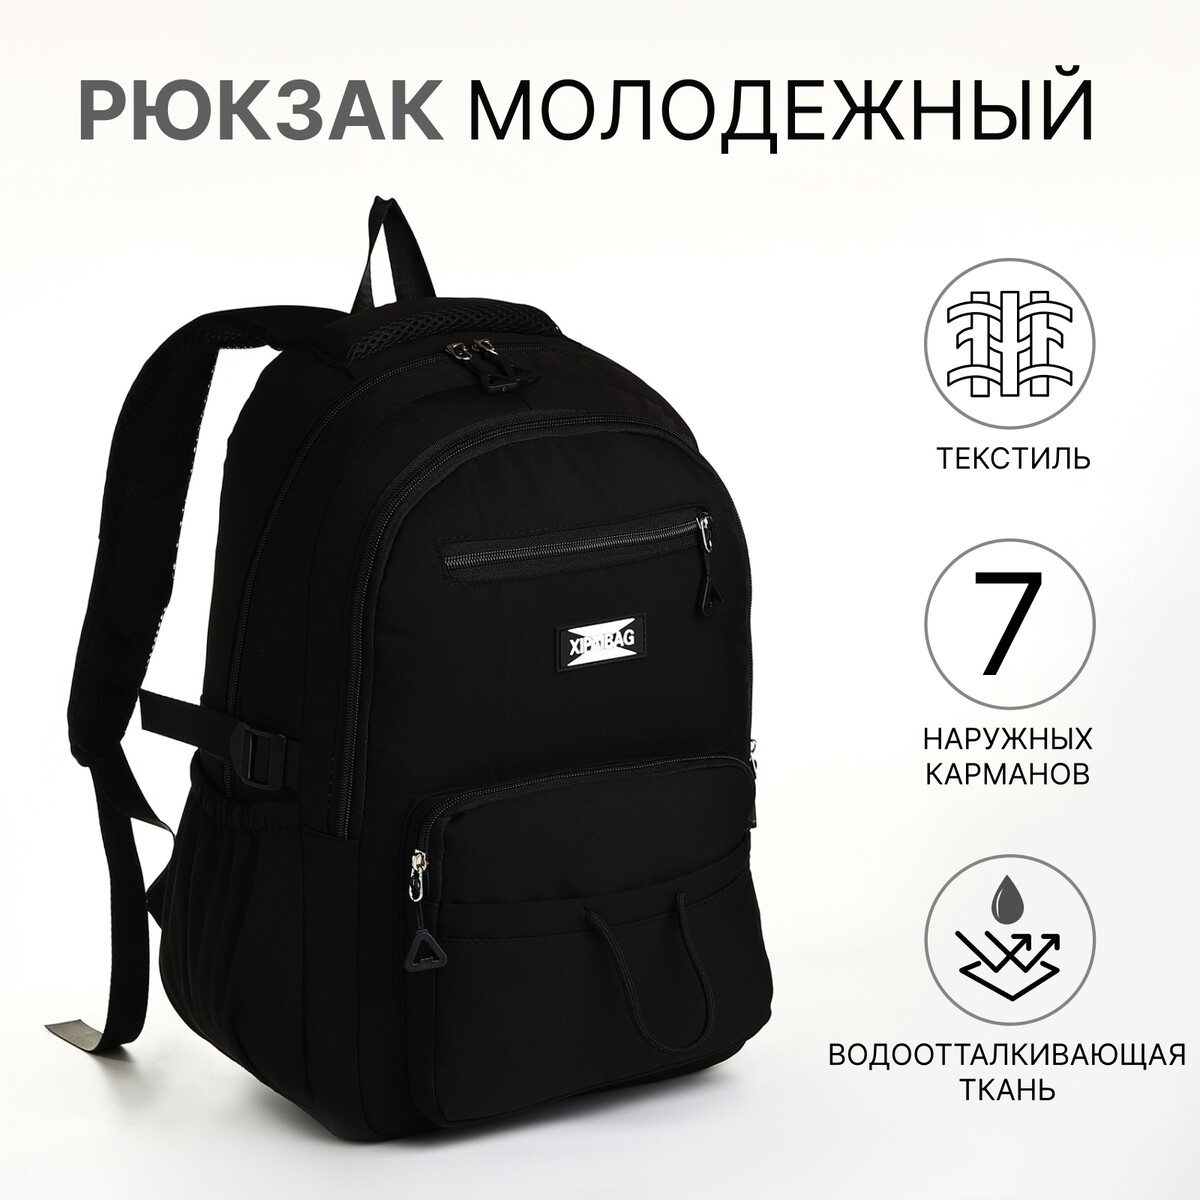 Рюкзак школьный из текстиля на молнии, 7 карманов, цвет черный